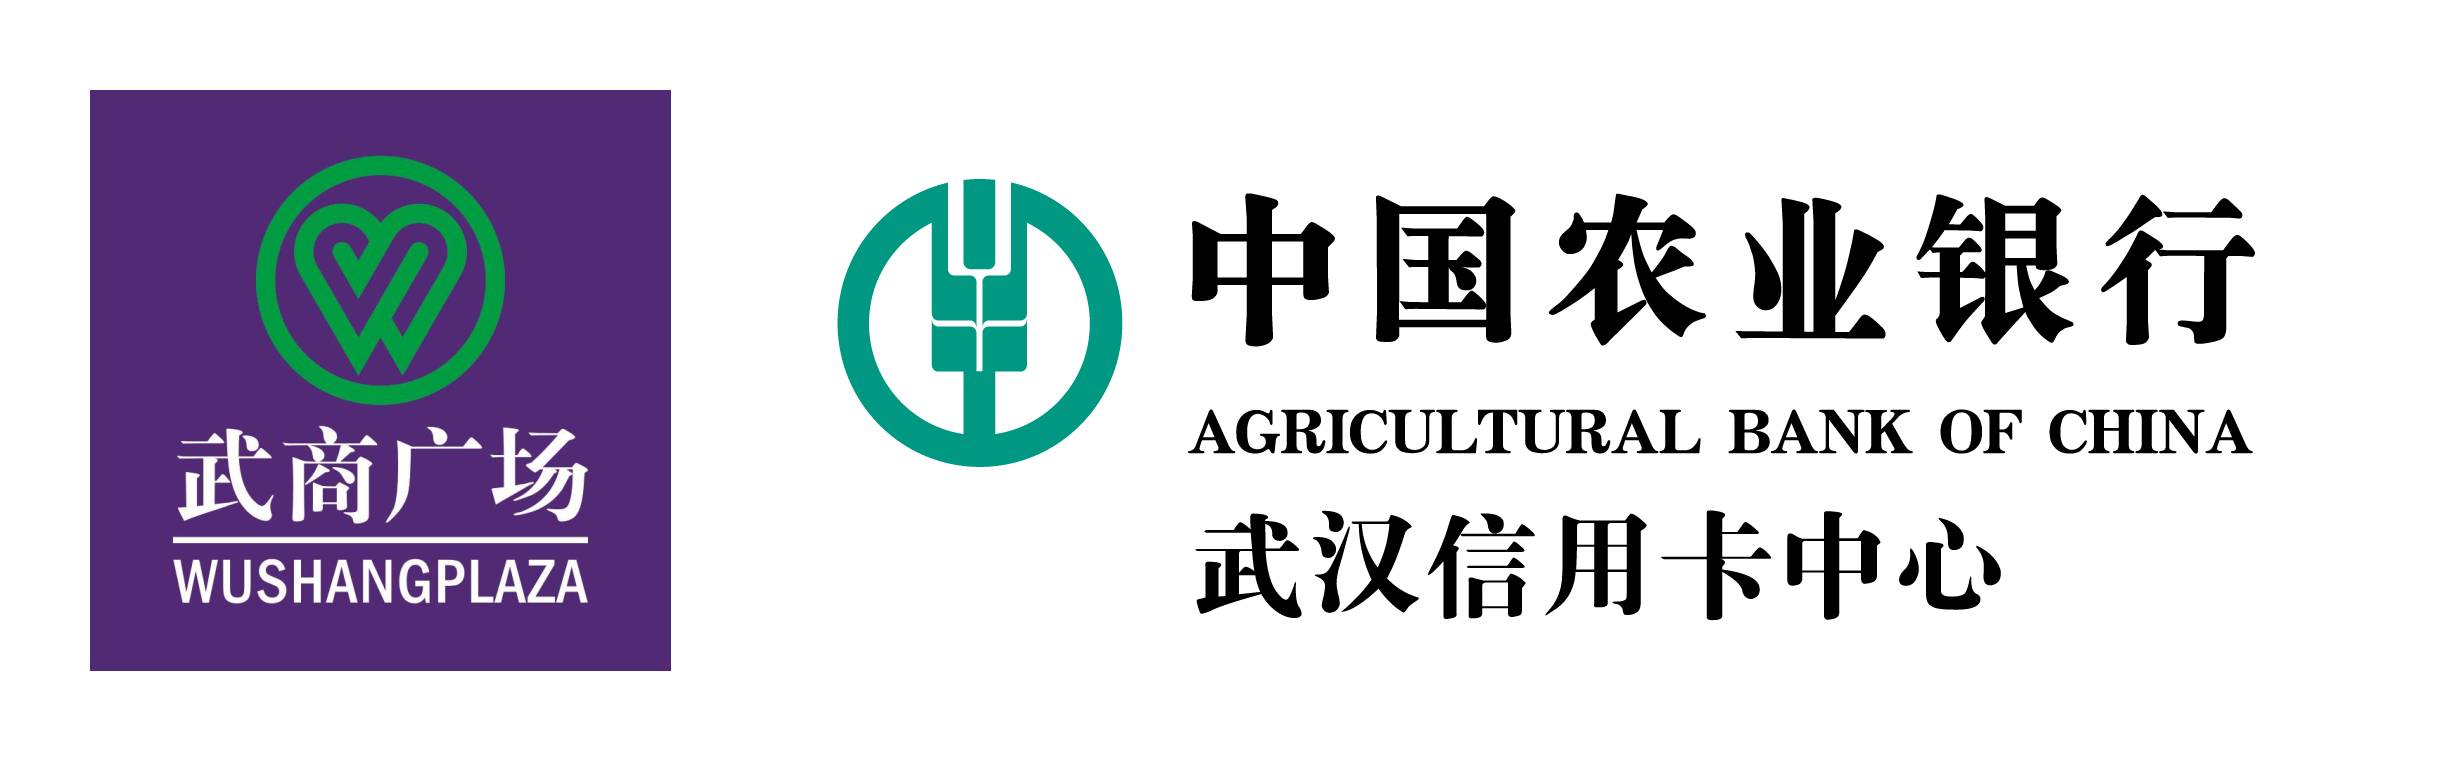 中国农业银行的图标图片